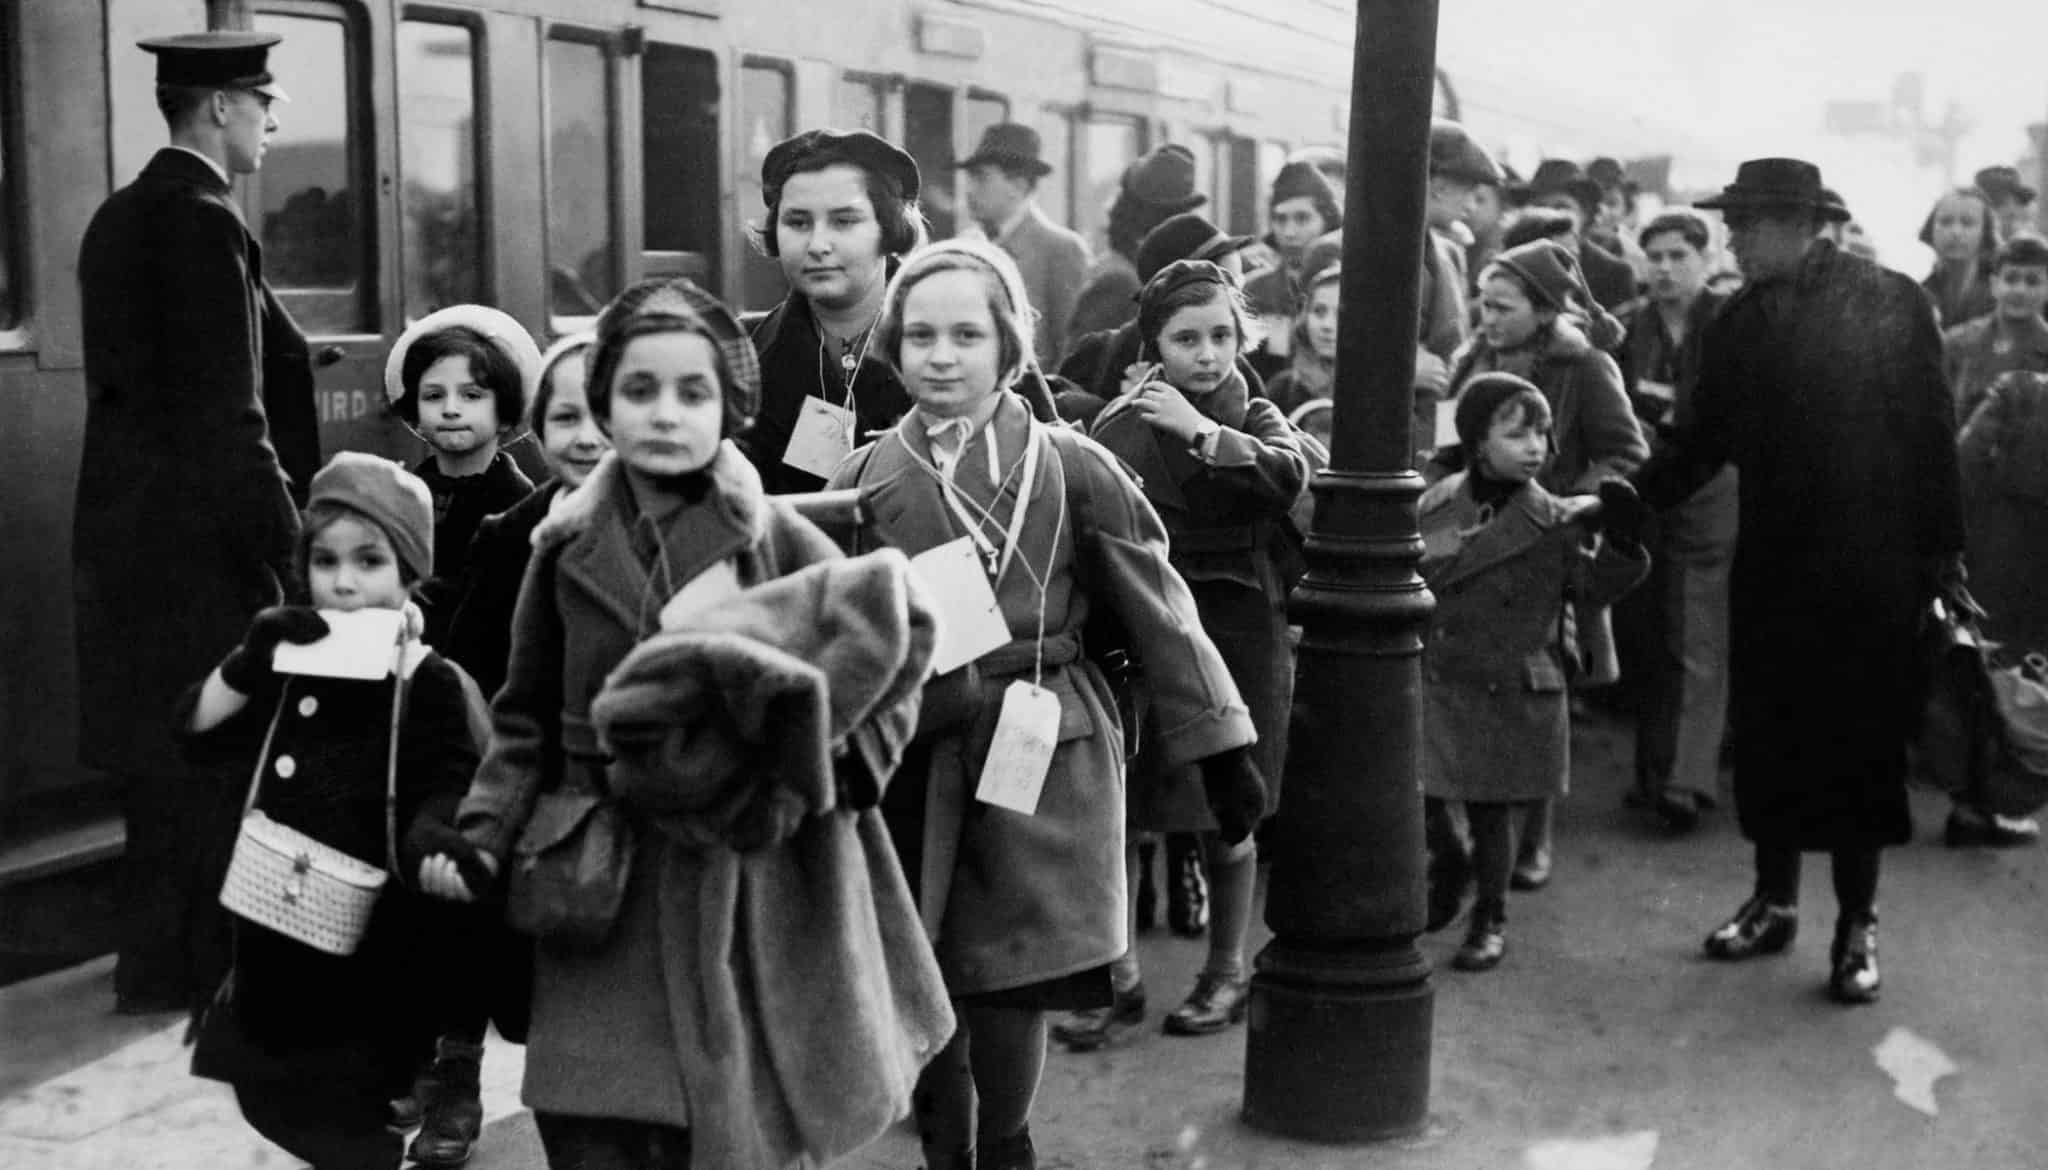 Клеймс Конференс проверила, что знают британцы о Холокосте